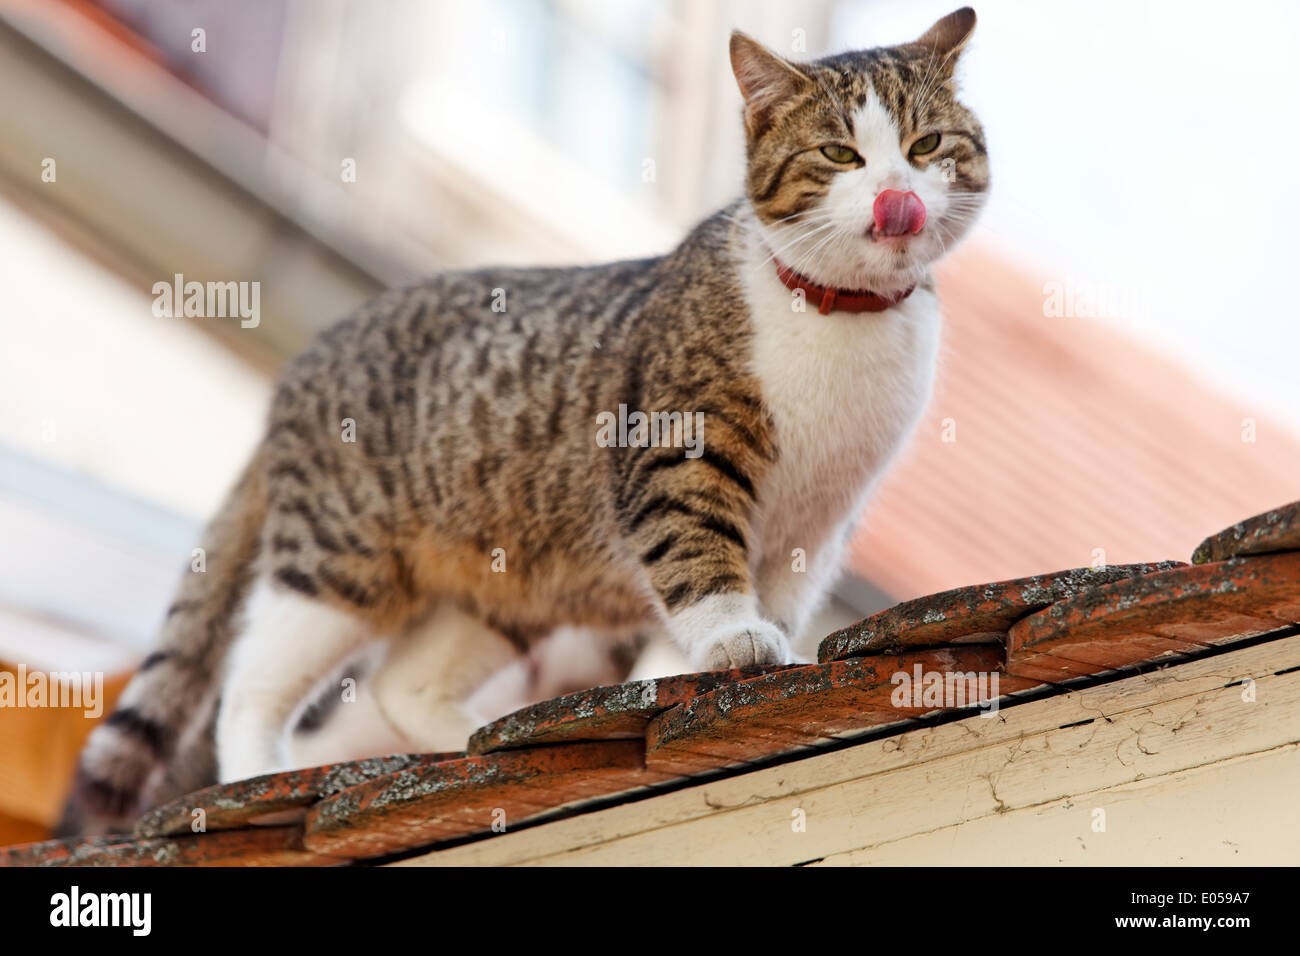 A cat sits on a house roof and waits, Eine Katze sitzt auf einem Hausdach und wartet Stock Photo